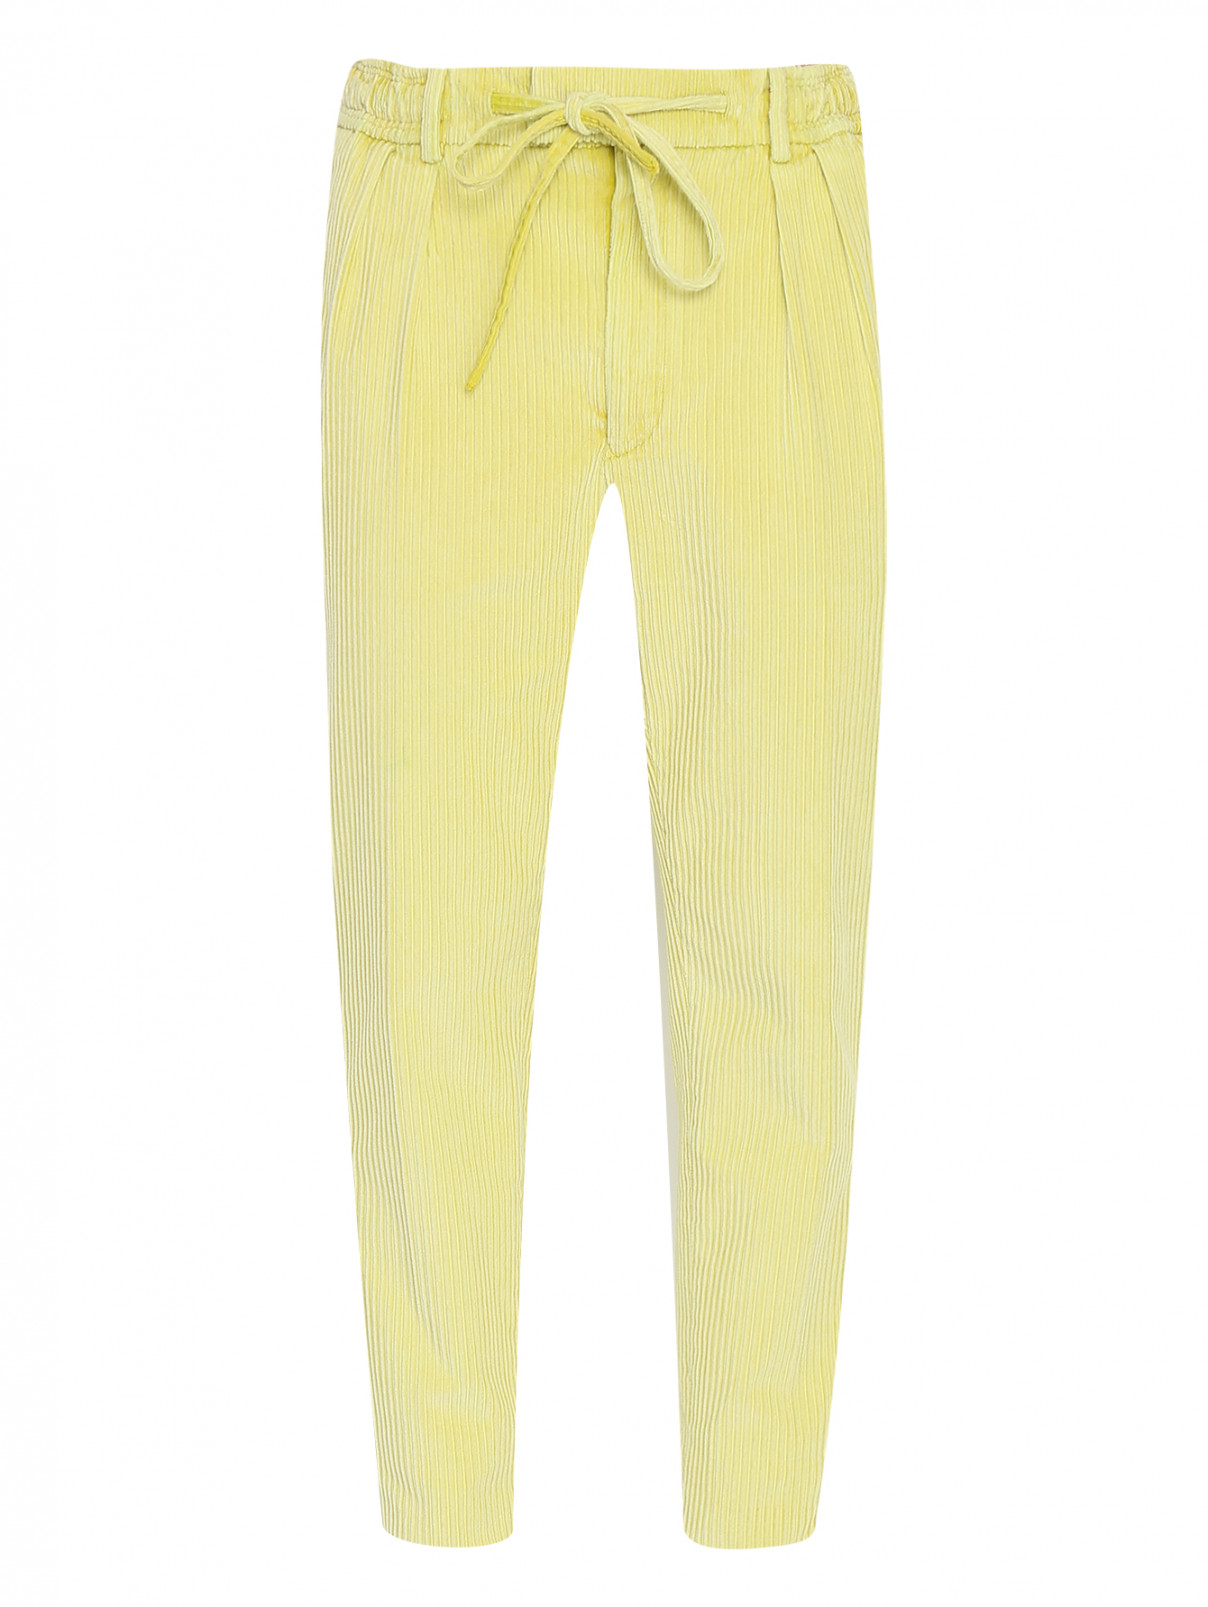 Вельветовые брюки на резинке Gabriele Pasini  –  Общий вид  – Цвет:  Желтый